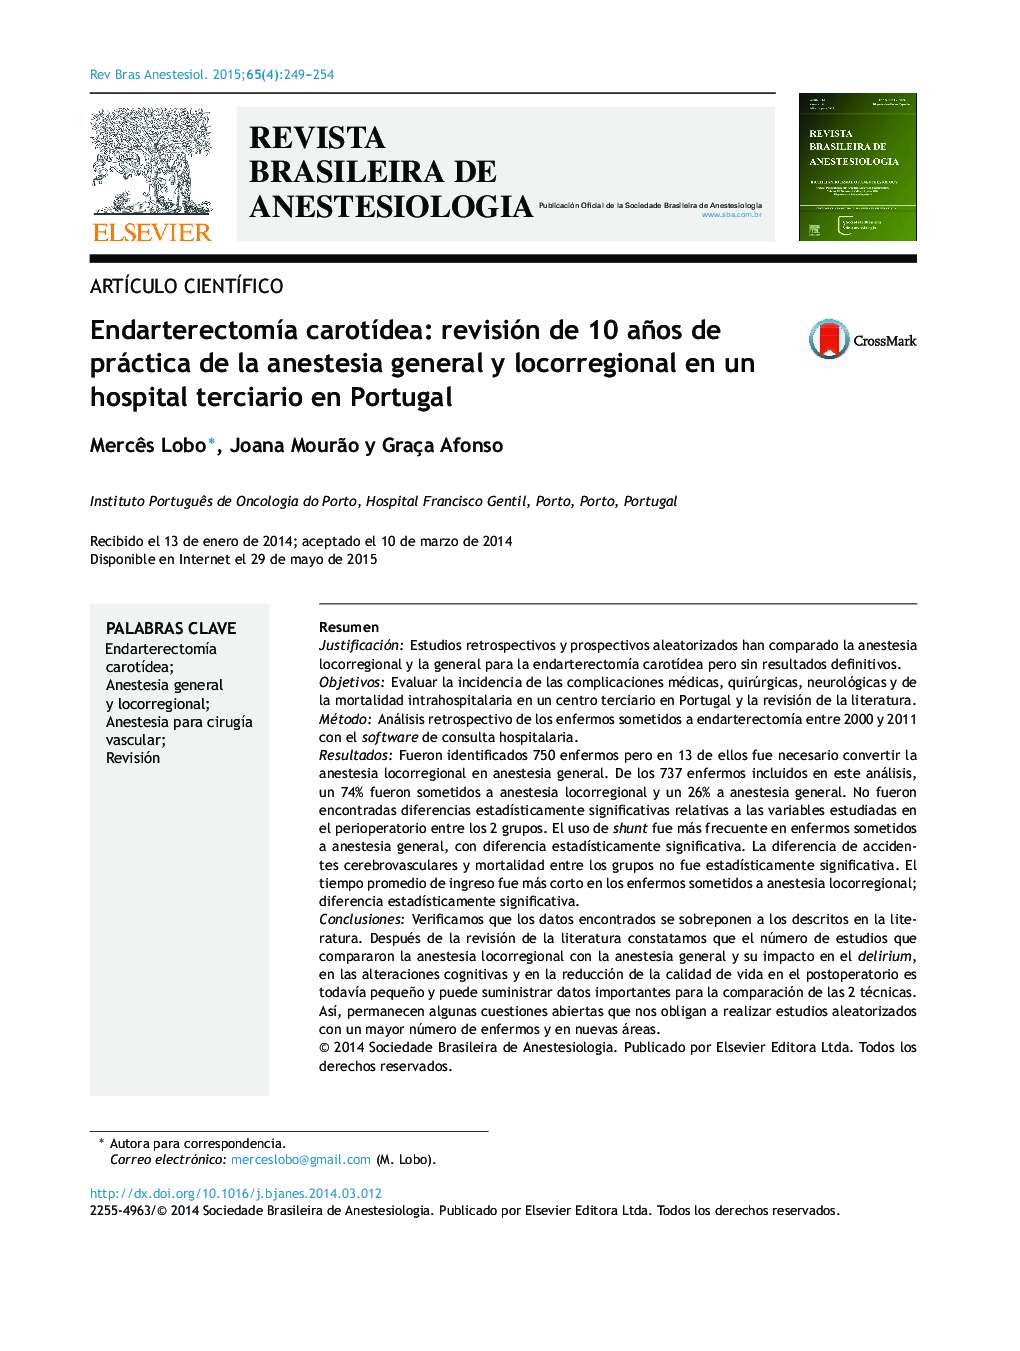 Endarterectomía carotídea: revisión de 10 años de práctica de la anestesia general y locorregional en un hospital terciario en Portugal